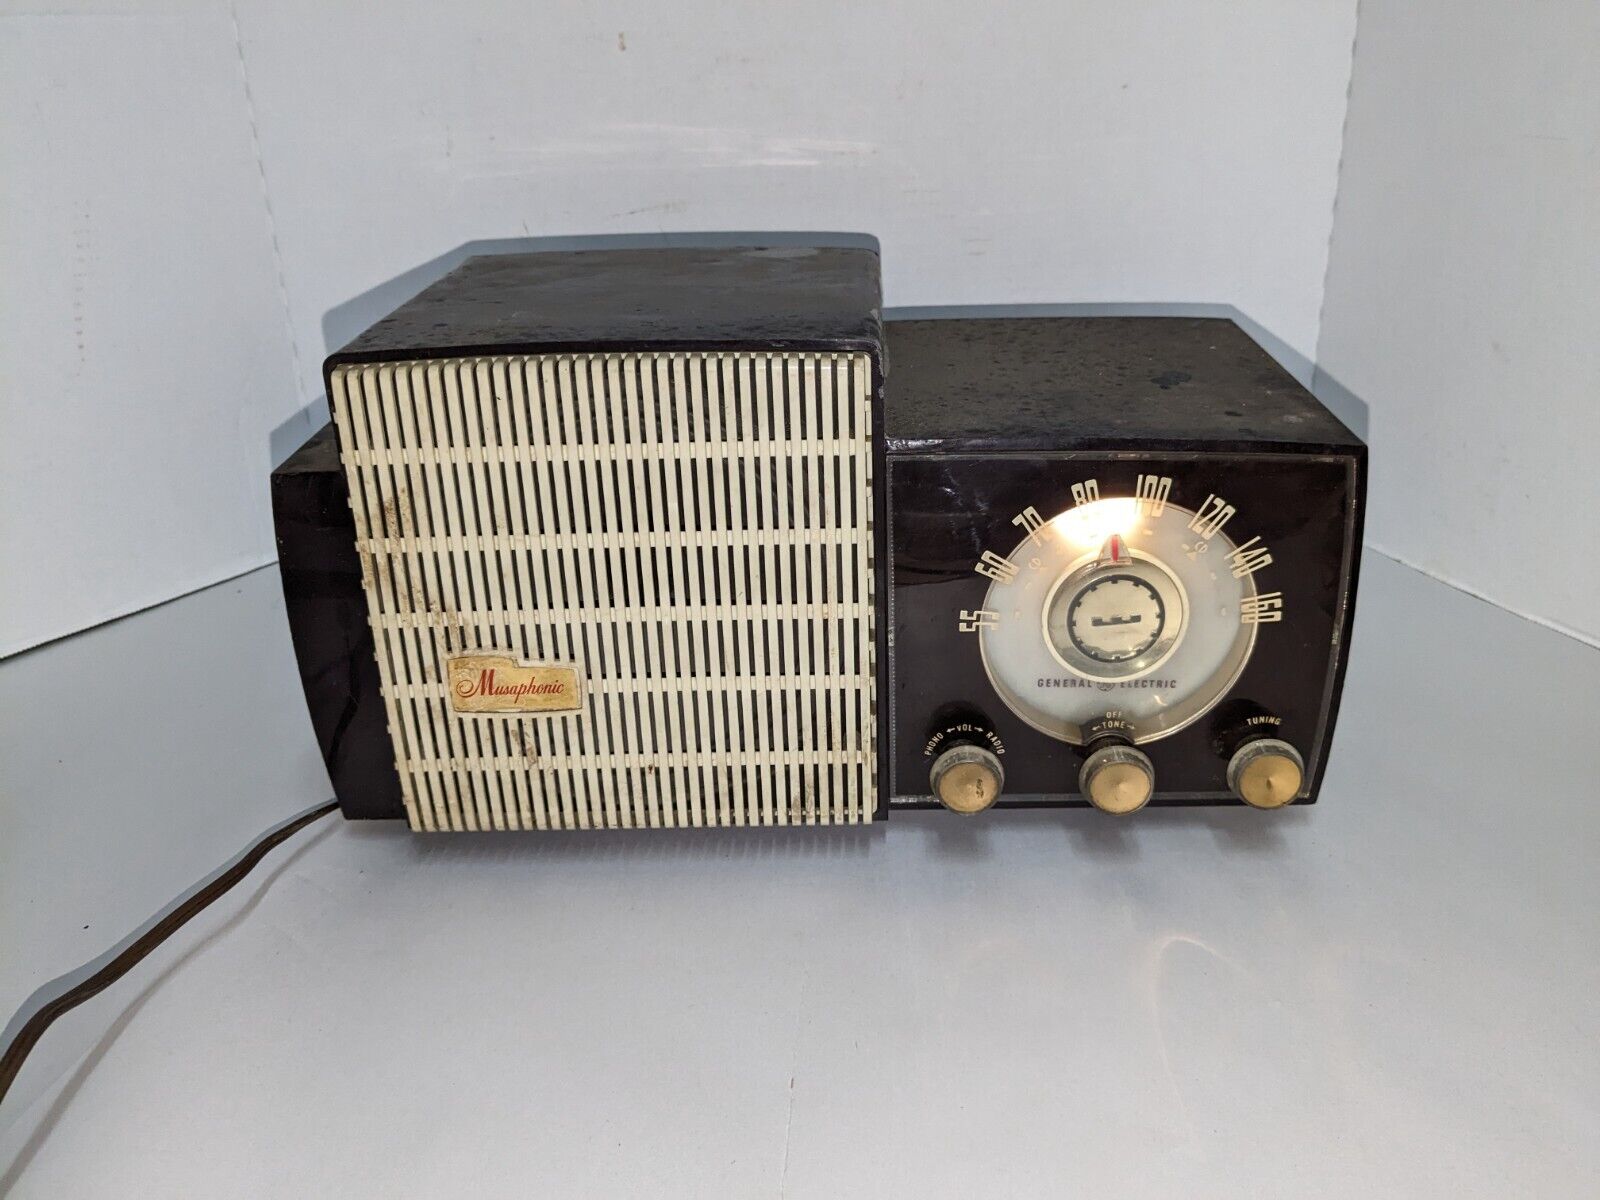 General Electric Musaphonic Tube Radio 870 AM Maroon GE Vintage 1950's MCM